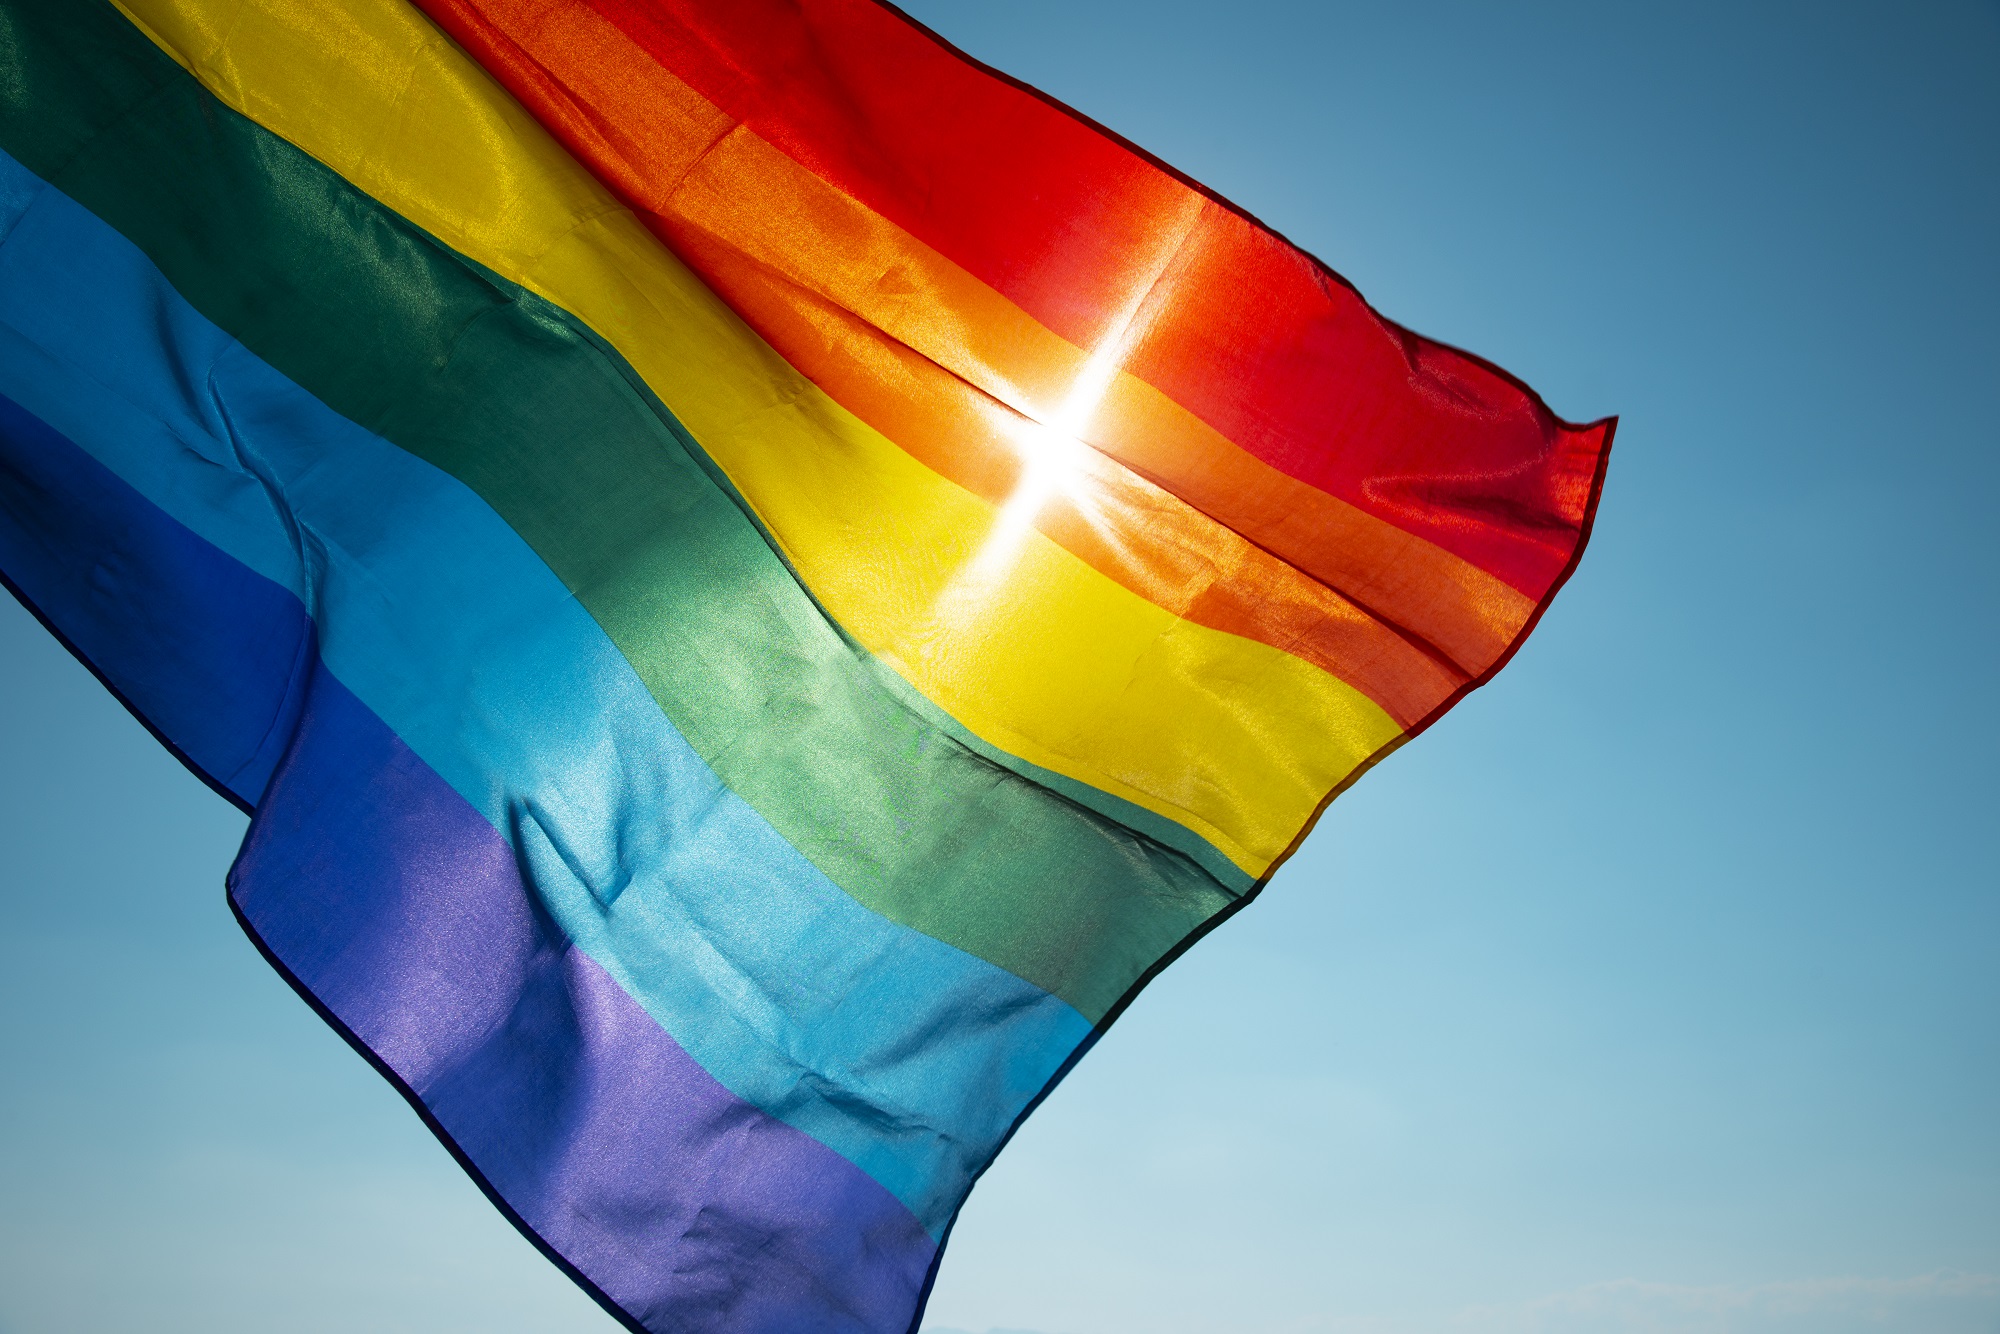 Pride rainbow flag